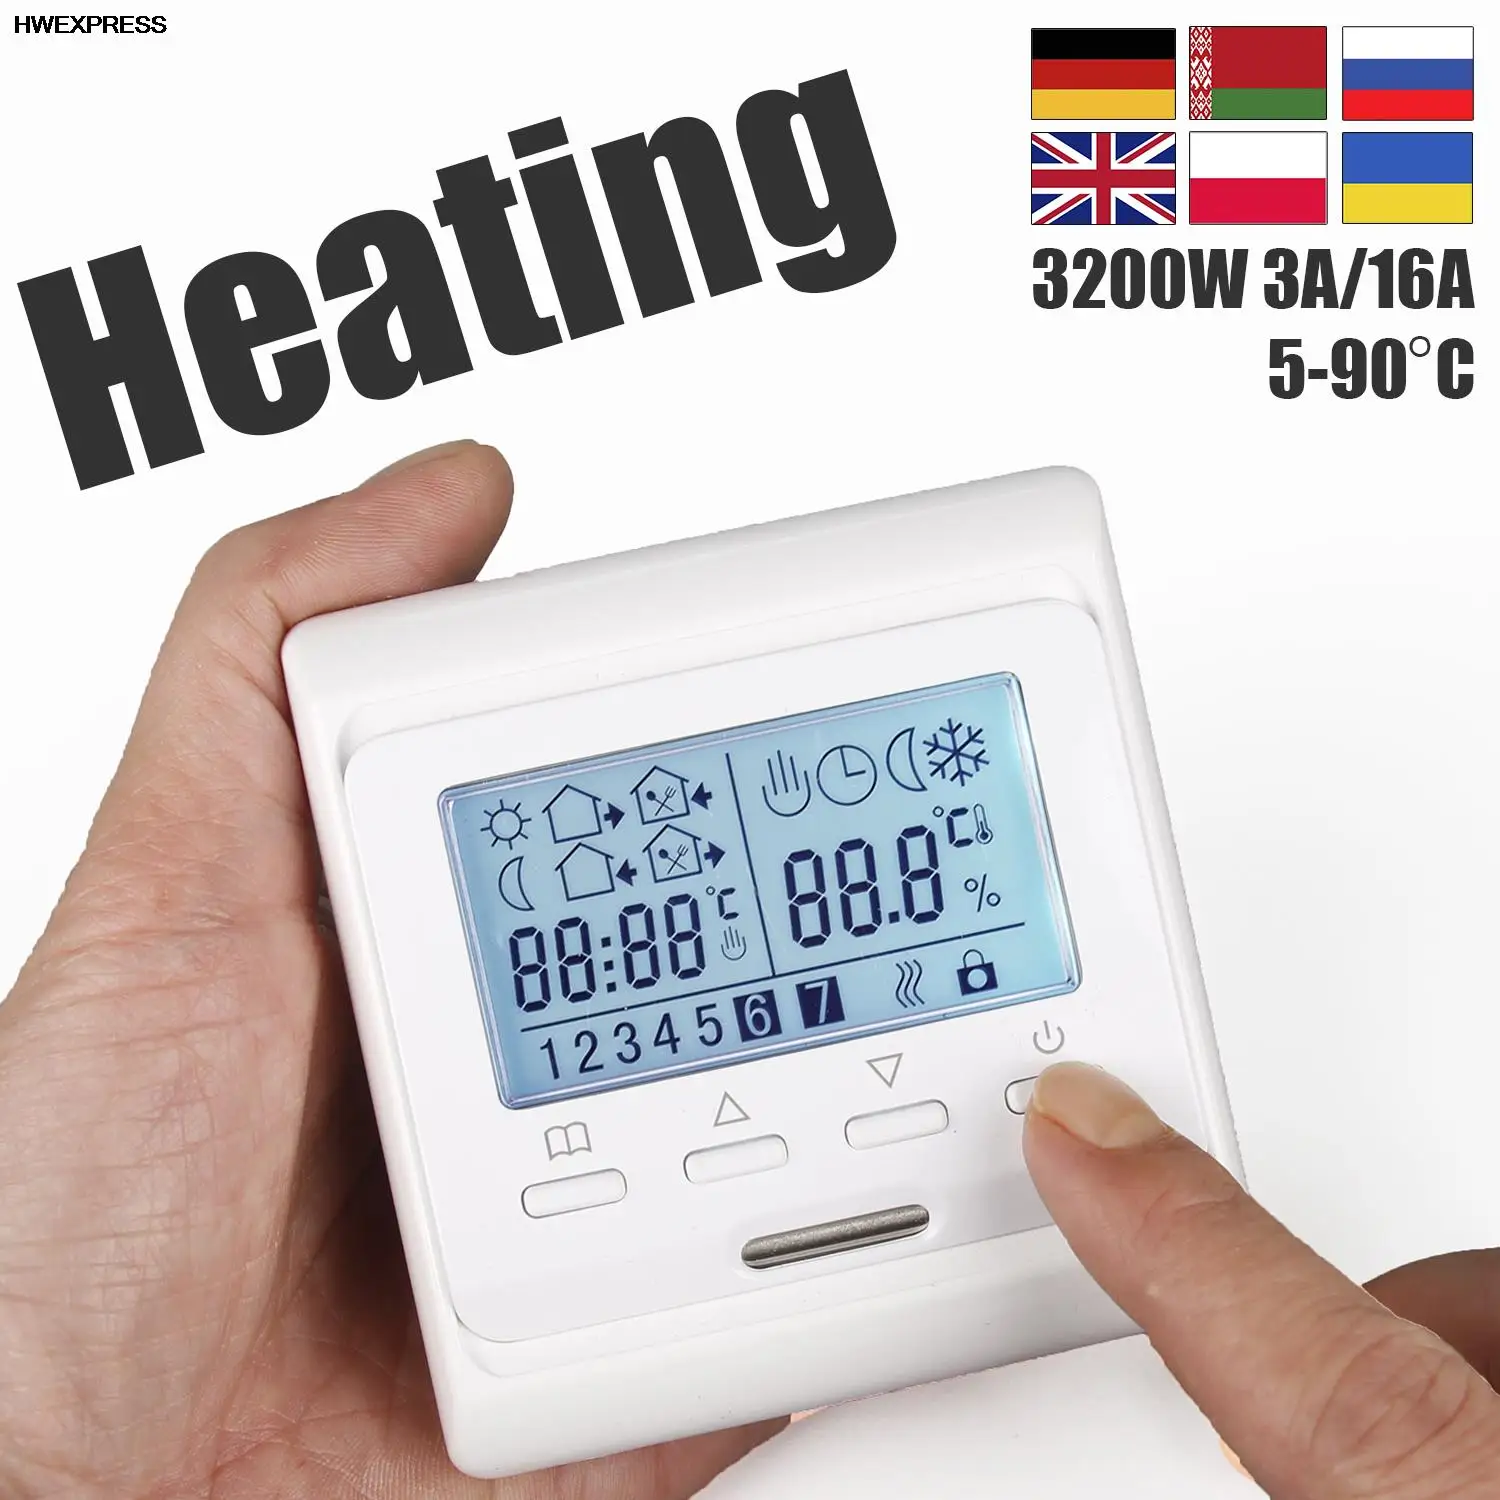 7-giorni-di-programmazione-termostato-ambiente-riscaldamento-a-pavimento-3a-16a230vac-per-riscaldamento-acqua-riscaldamento-elettrico